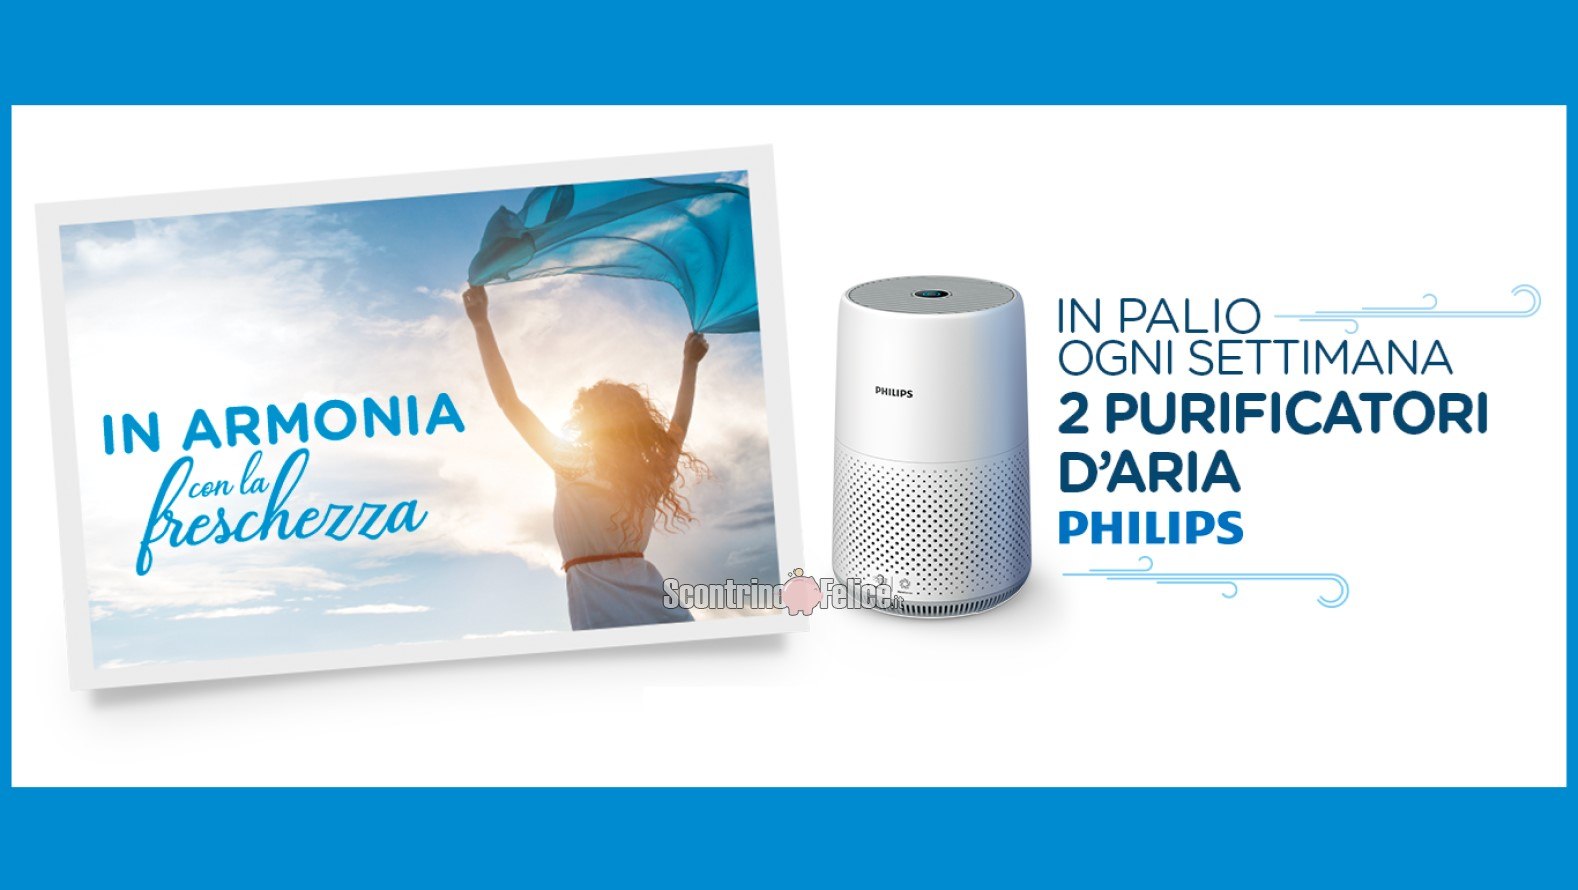 Concorso Infasil "In armonia con la freschezza": vinci 2 purificatori d'aria Philips a settimana!